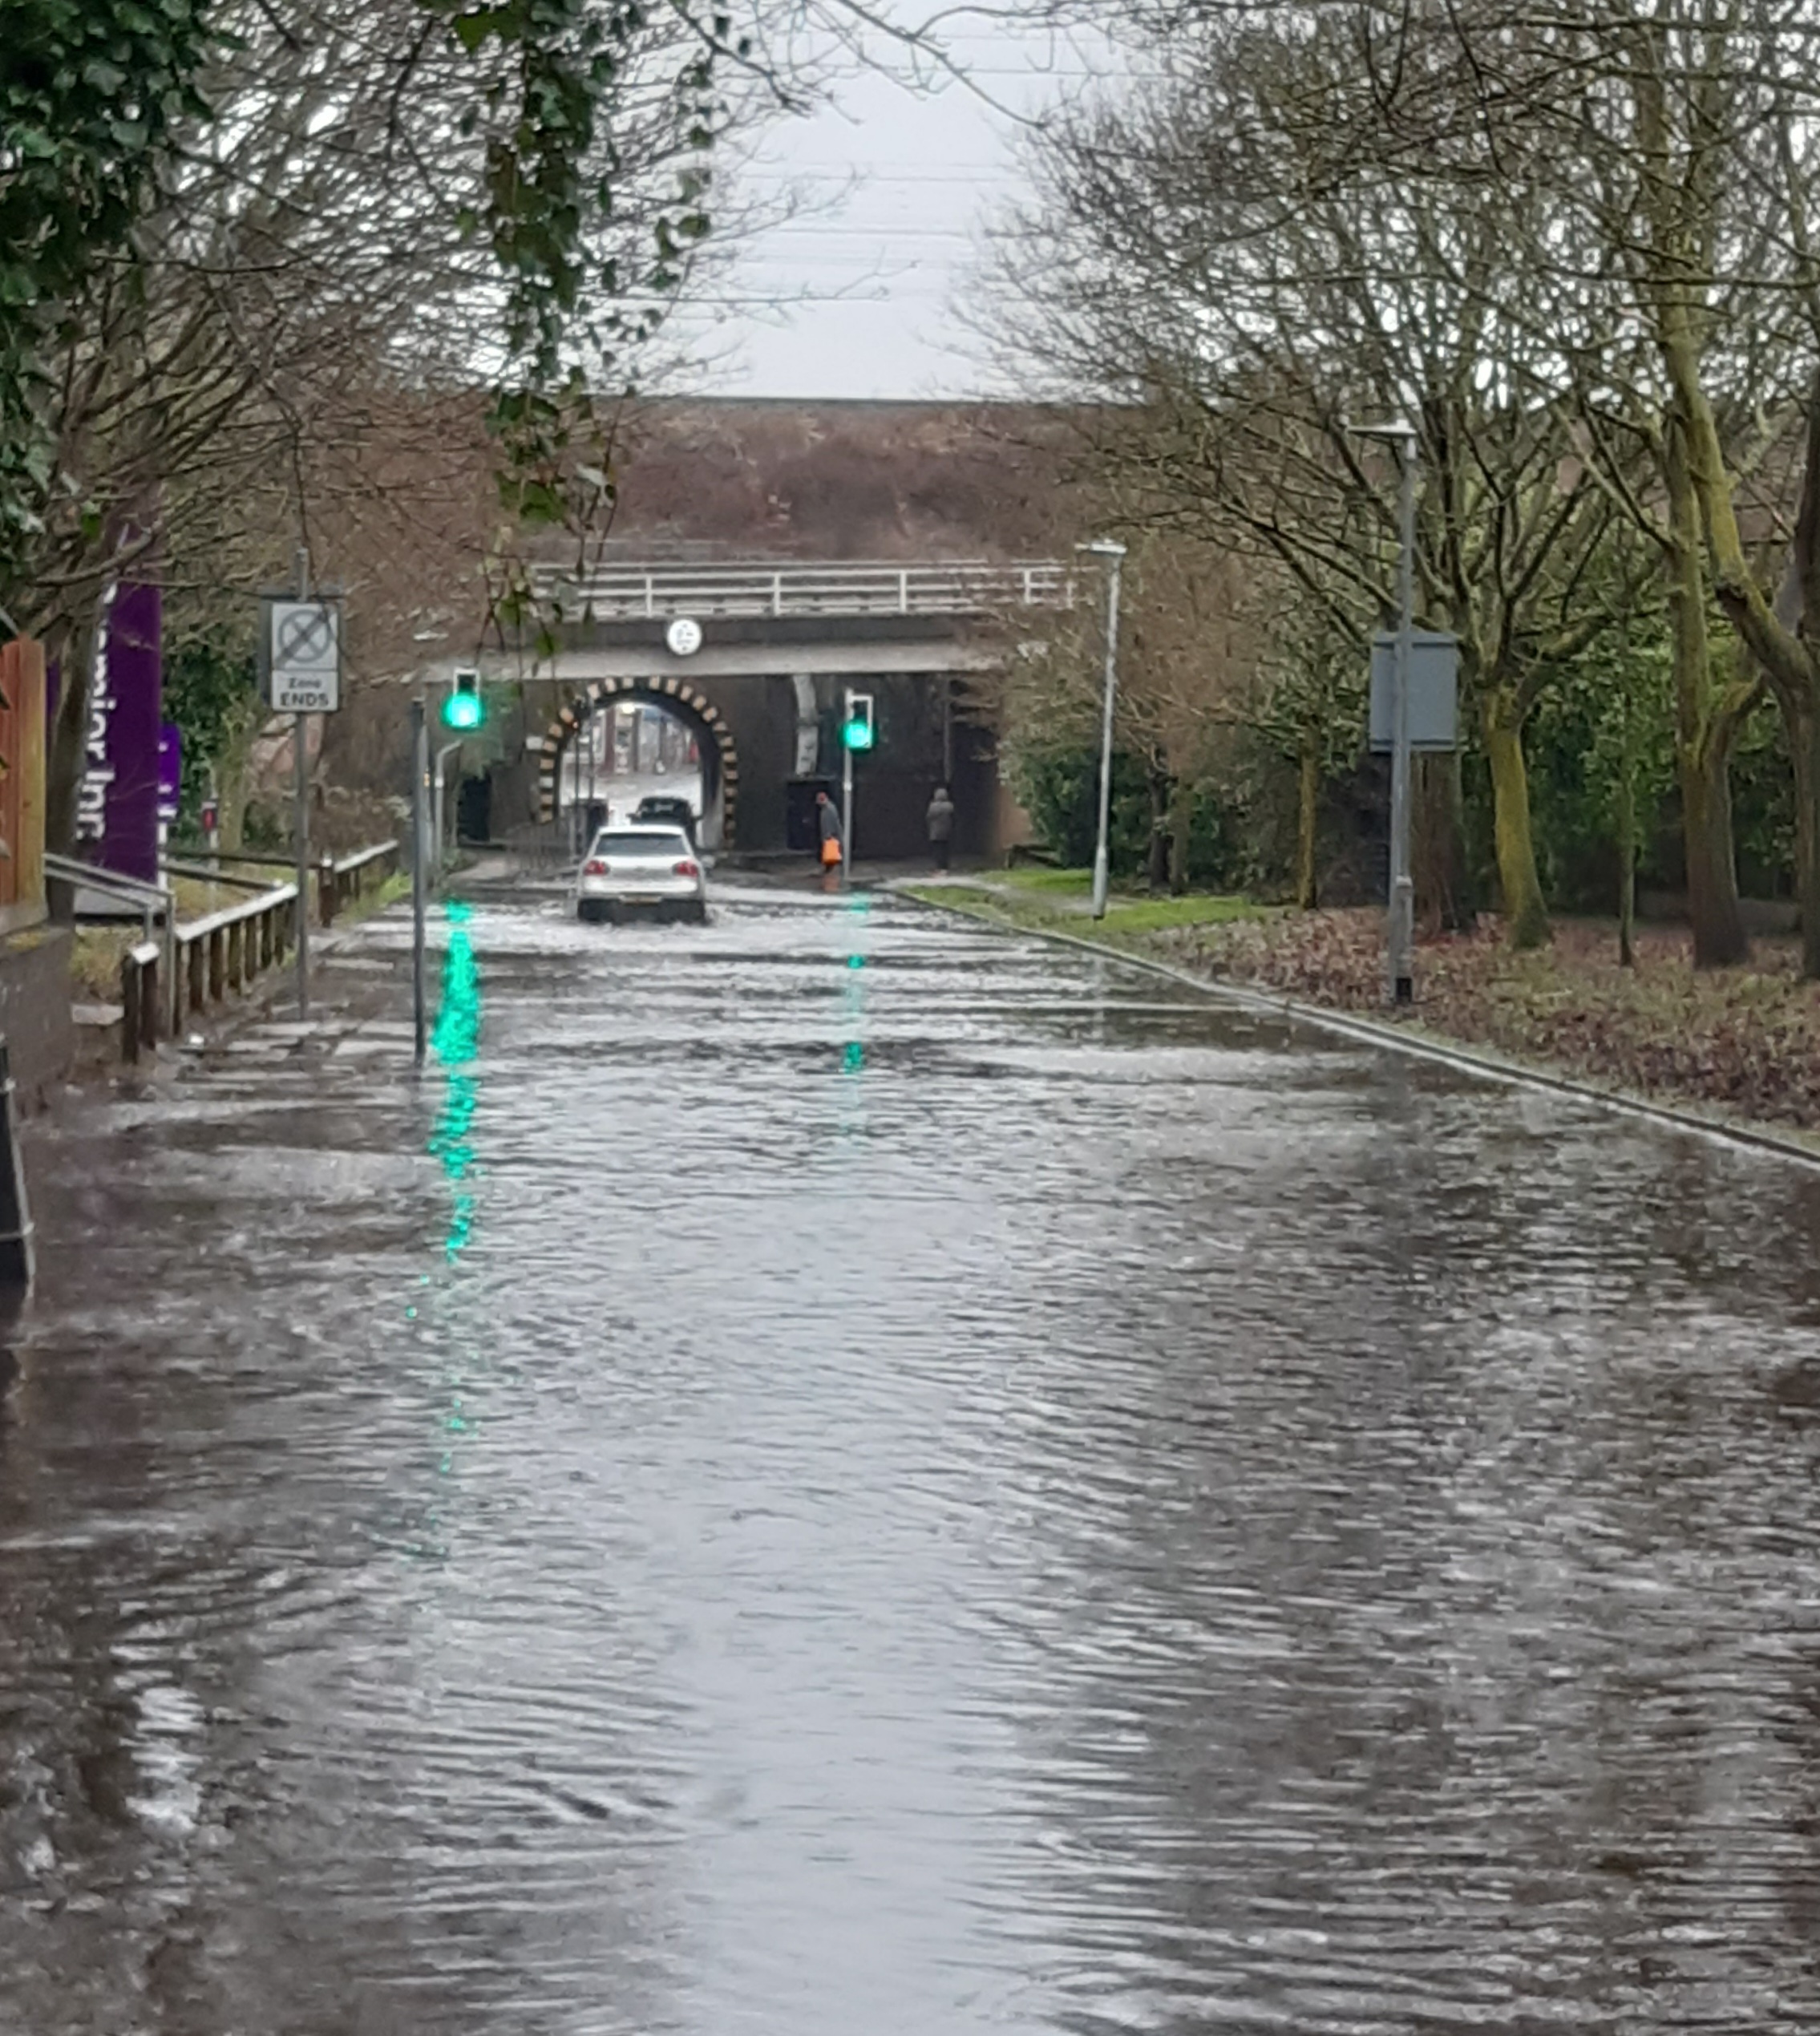 Water Lane in Watford earlier this afternoon. Credit: Deborah Nichols